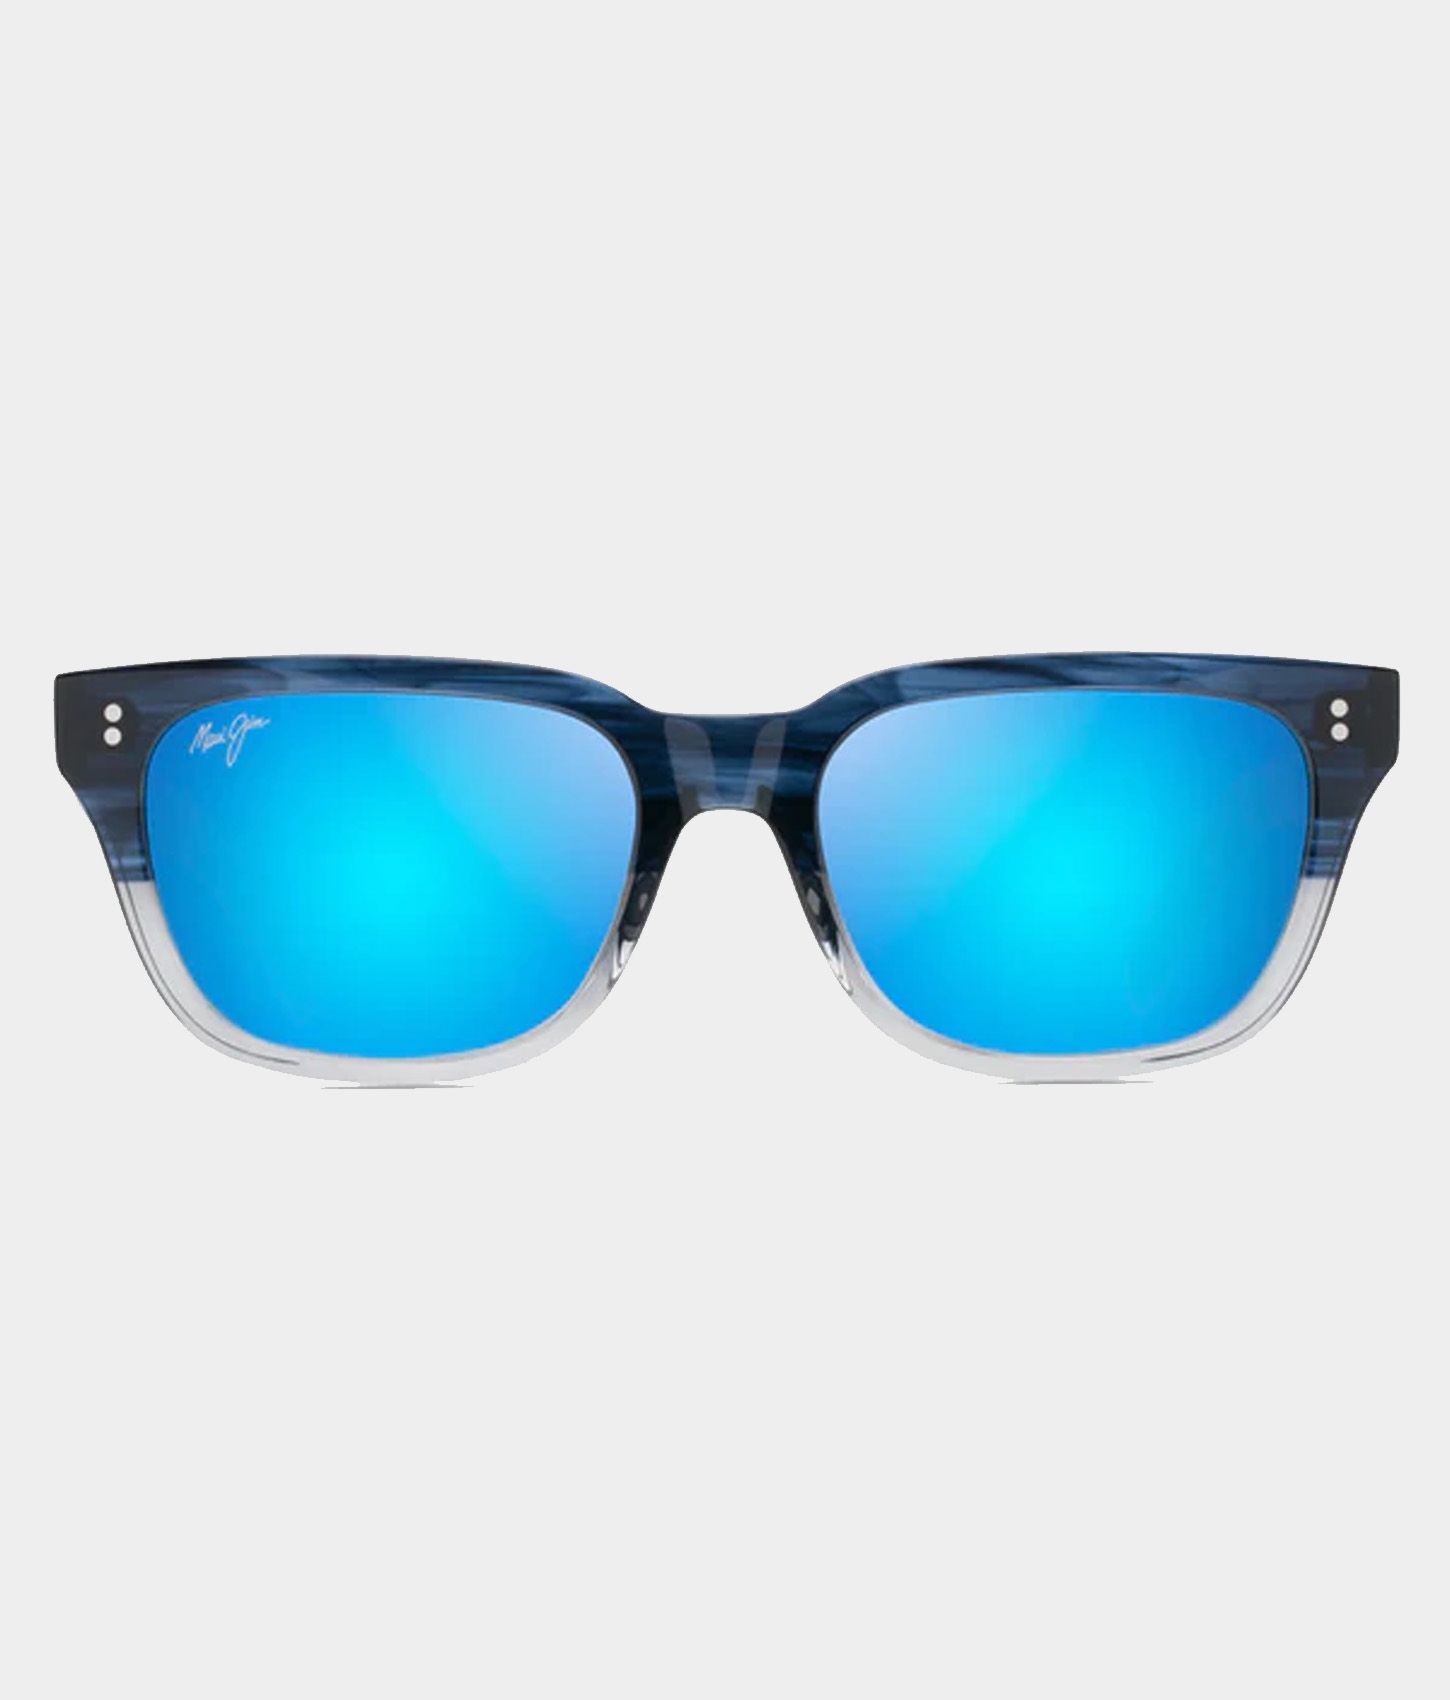 Likeke 894 Polarized Sunglasses